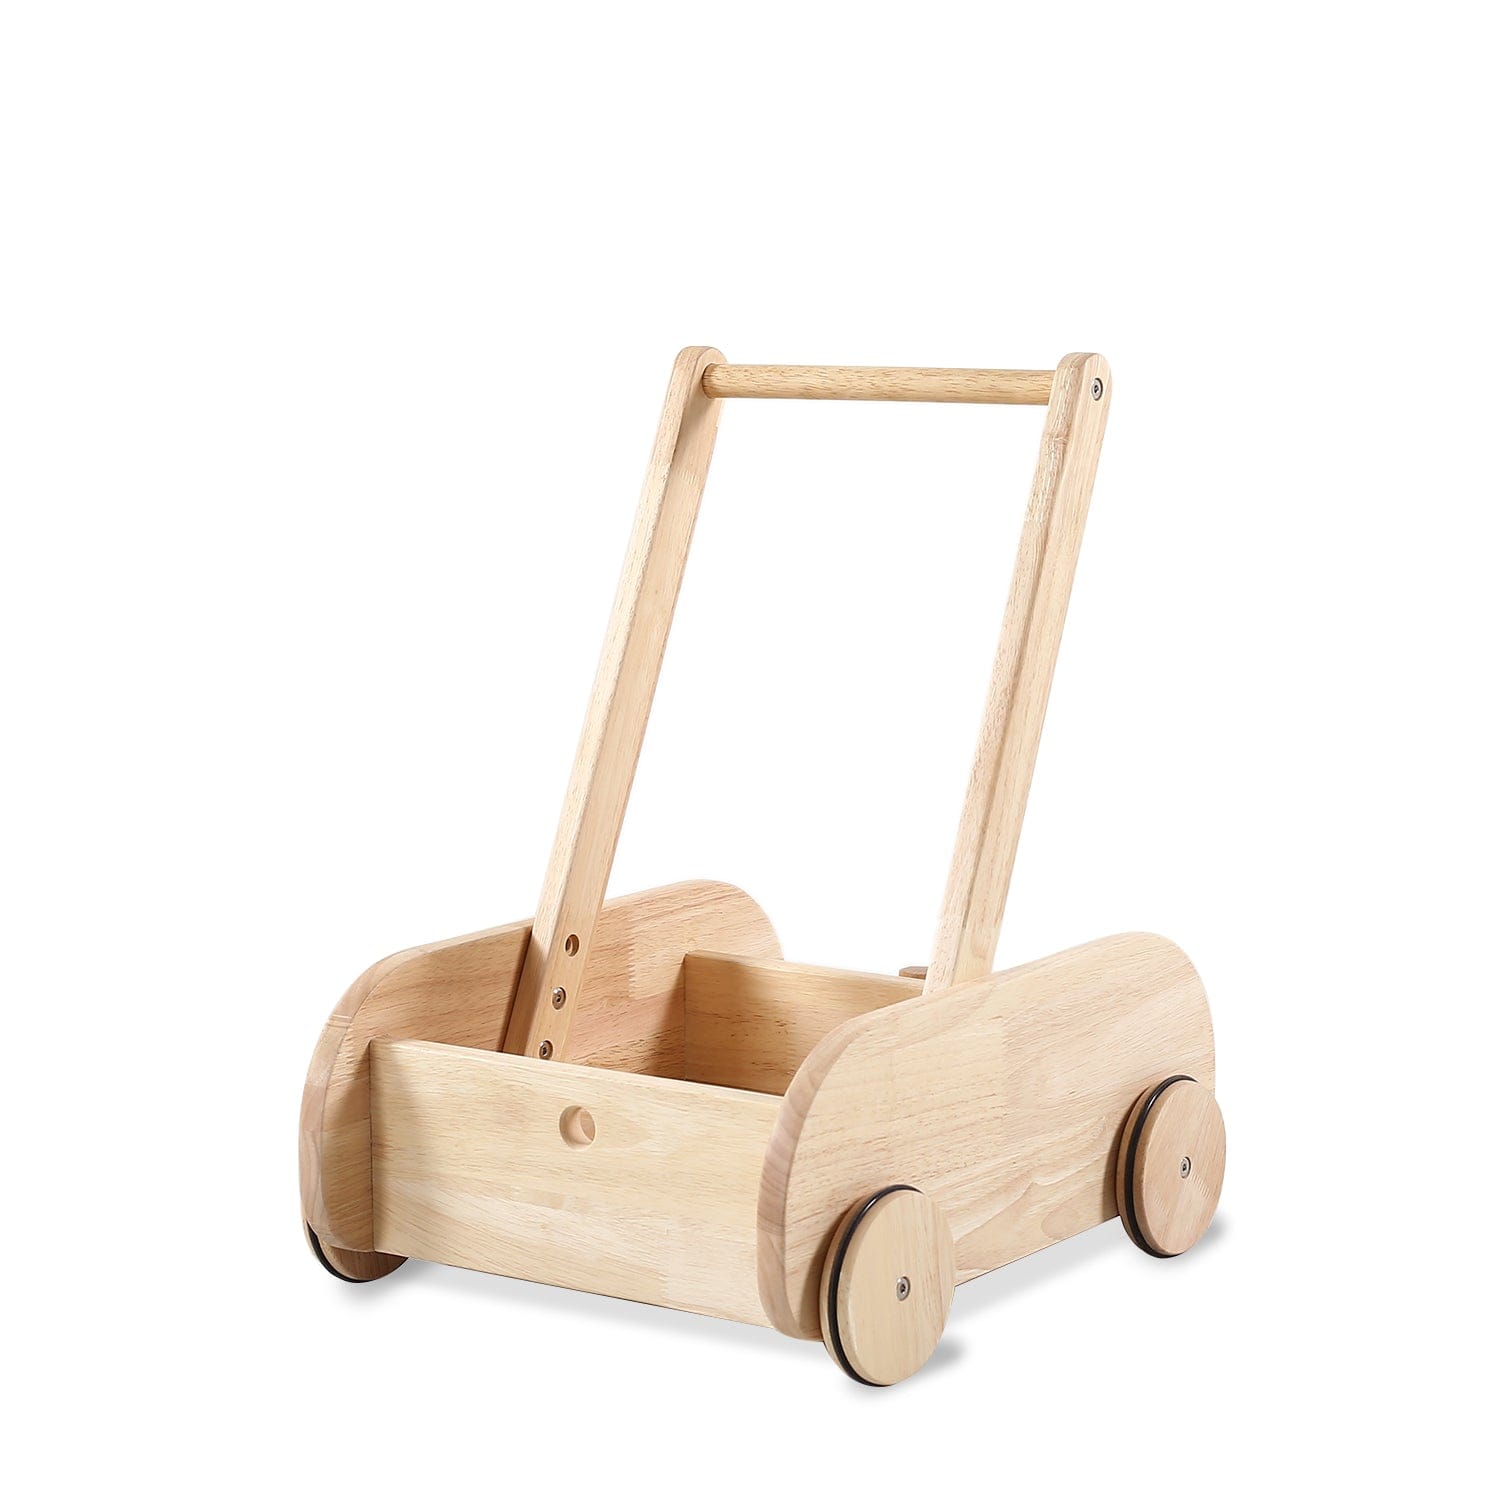 Wooden Adjustable Speed Control Baby Walker